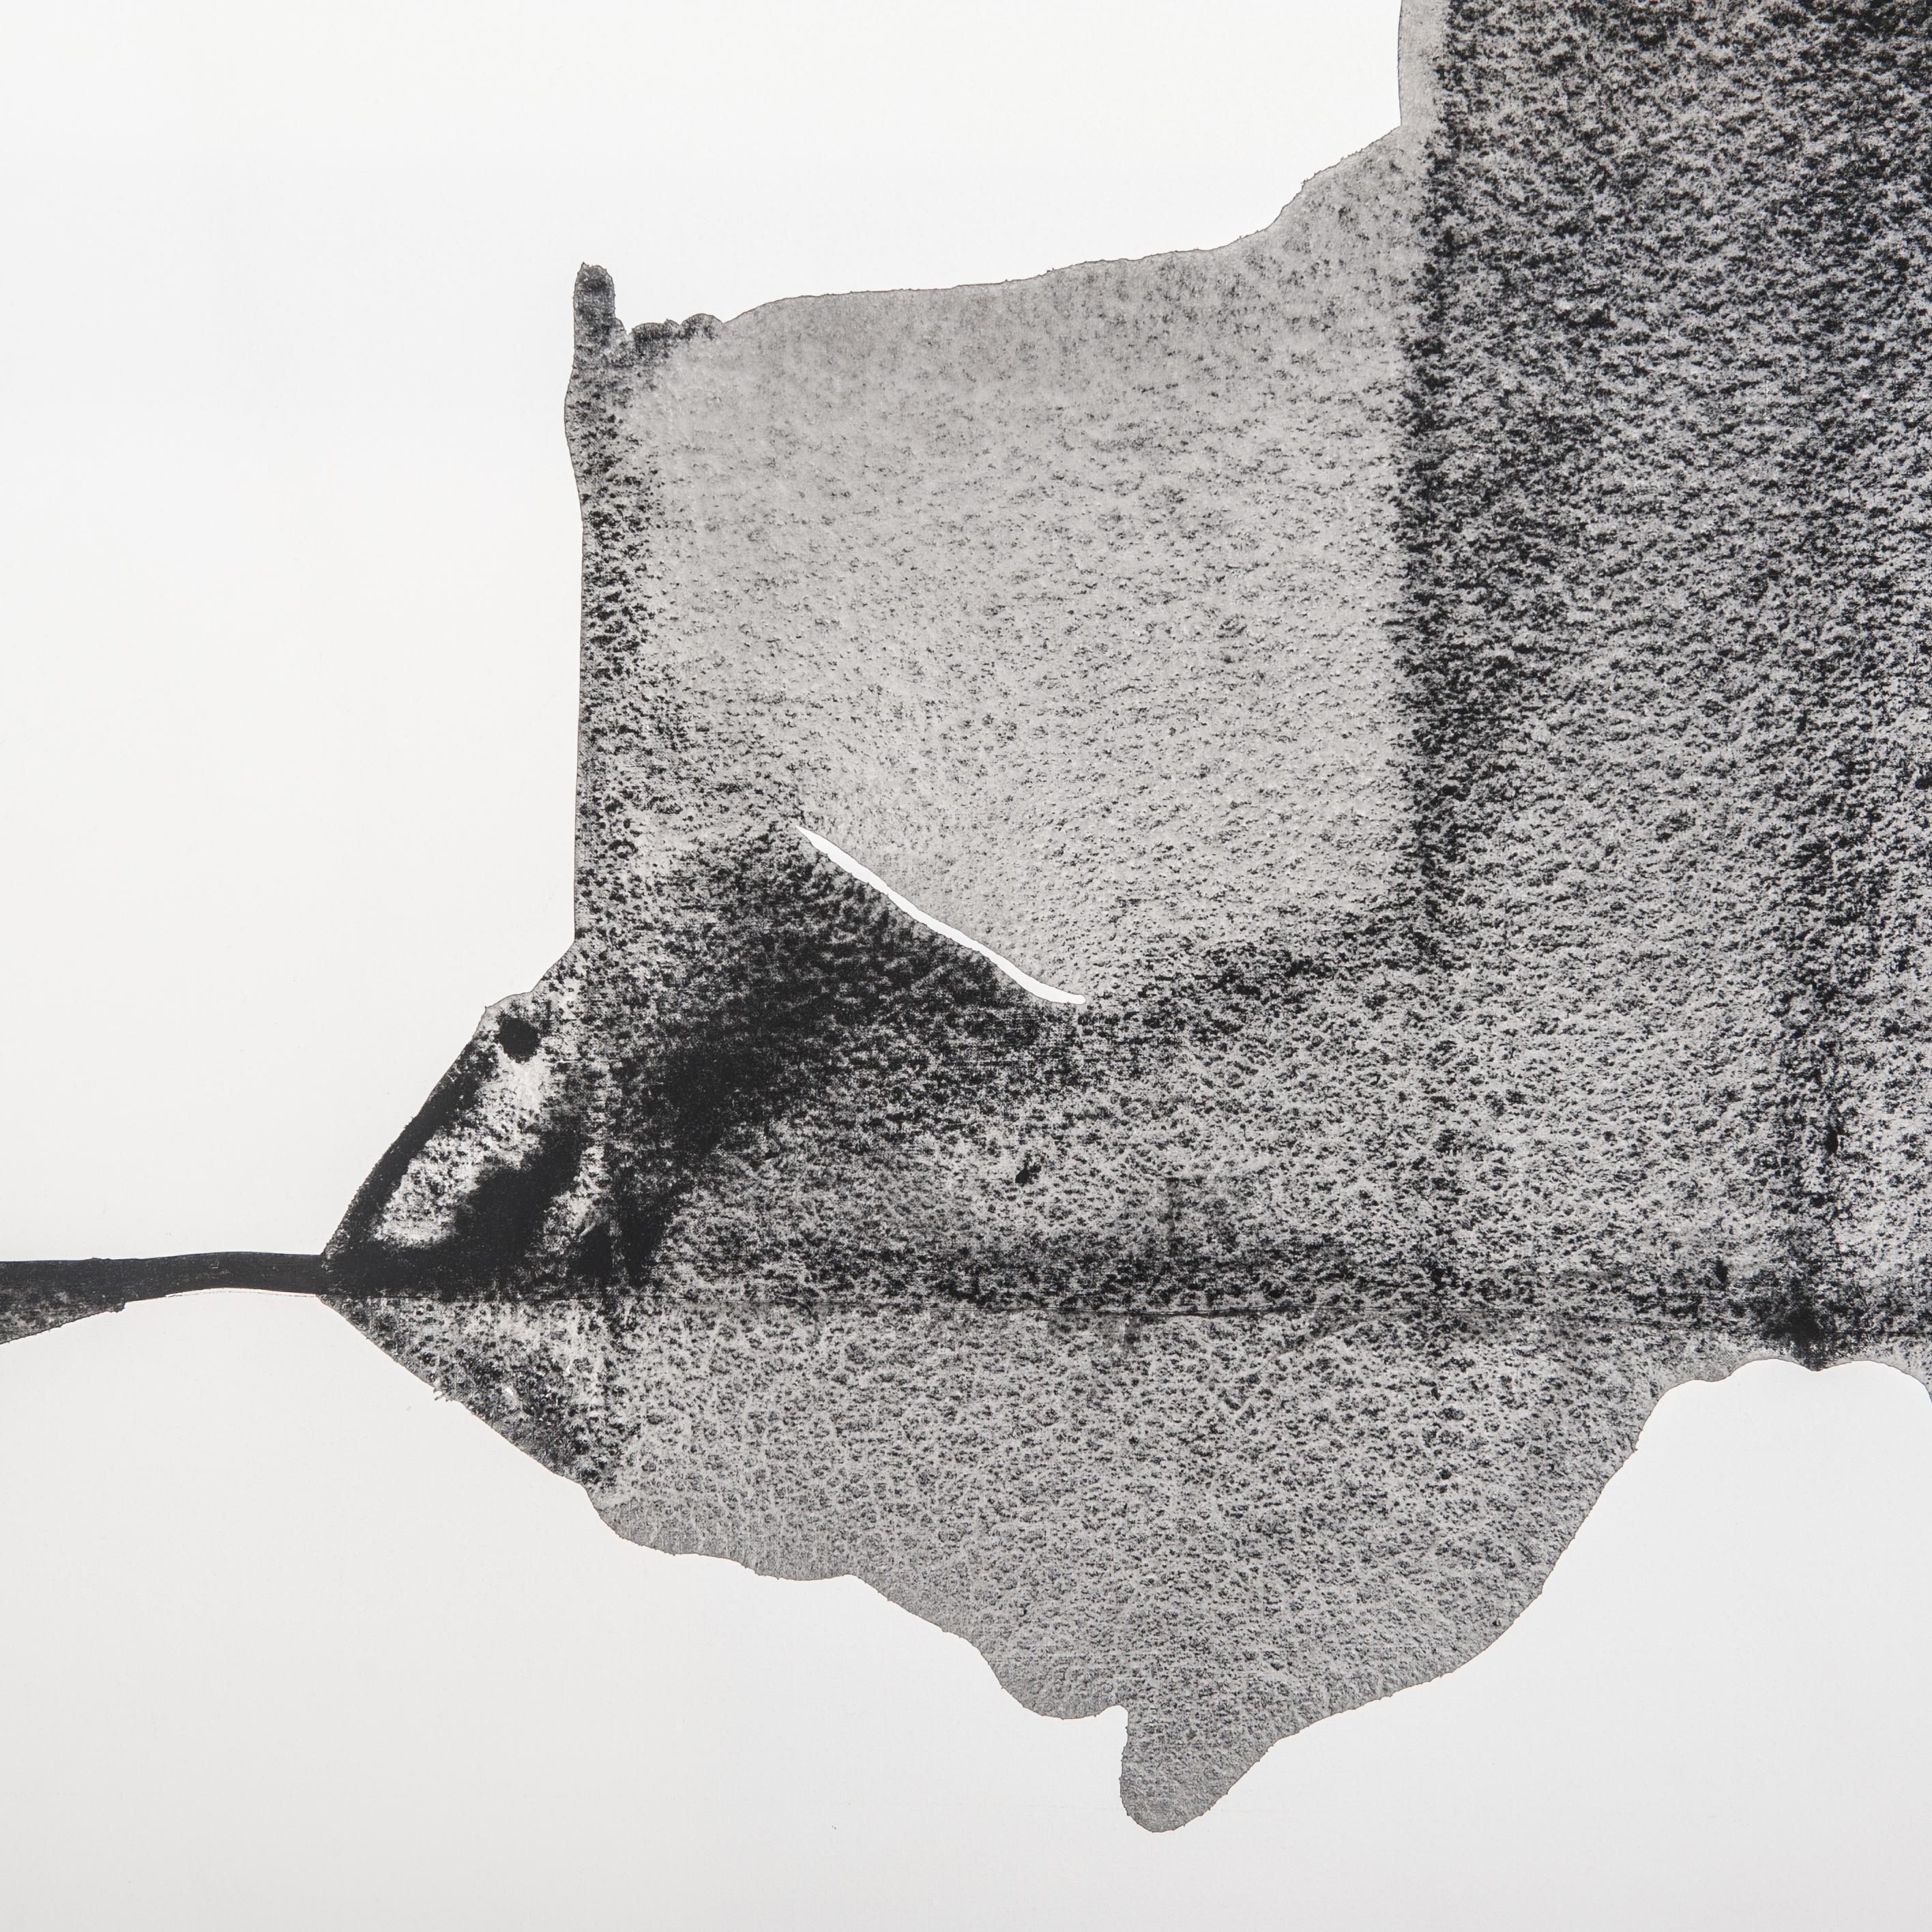 Modernes abstraktes Gemälde in schwarzen und weißen Farben signiert auf der Rückseite Guillermo Aritza, schwarzer Schattenfugenrahmen versilbert auf der Vorderansicht.
Guillermo Arizta, 1949 in Mexiko geboren und seit 1985 in Paris lebend, ist ein